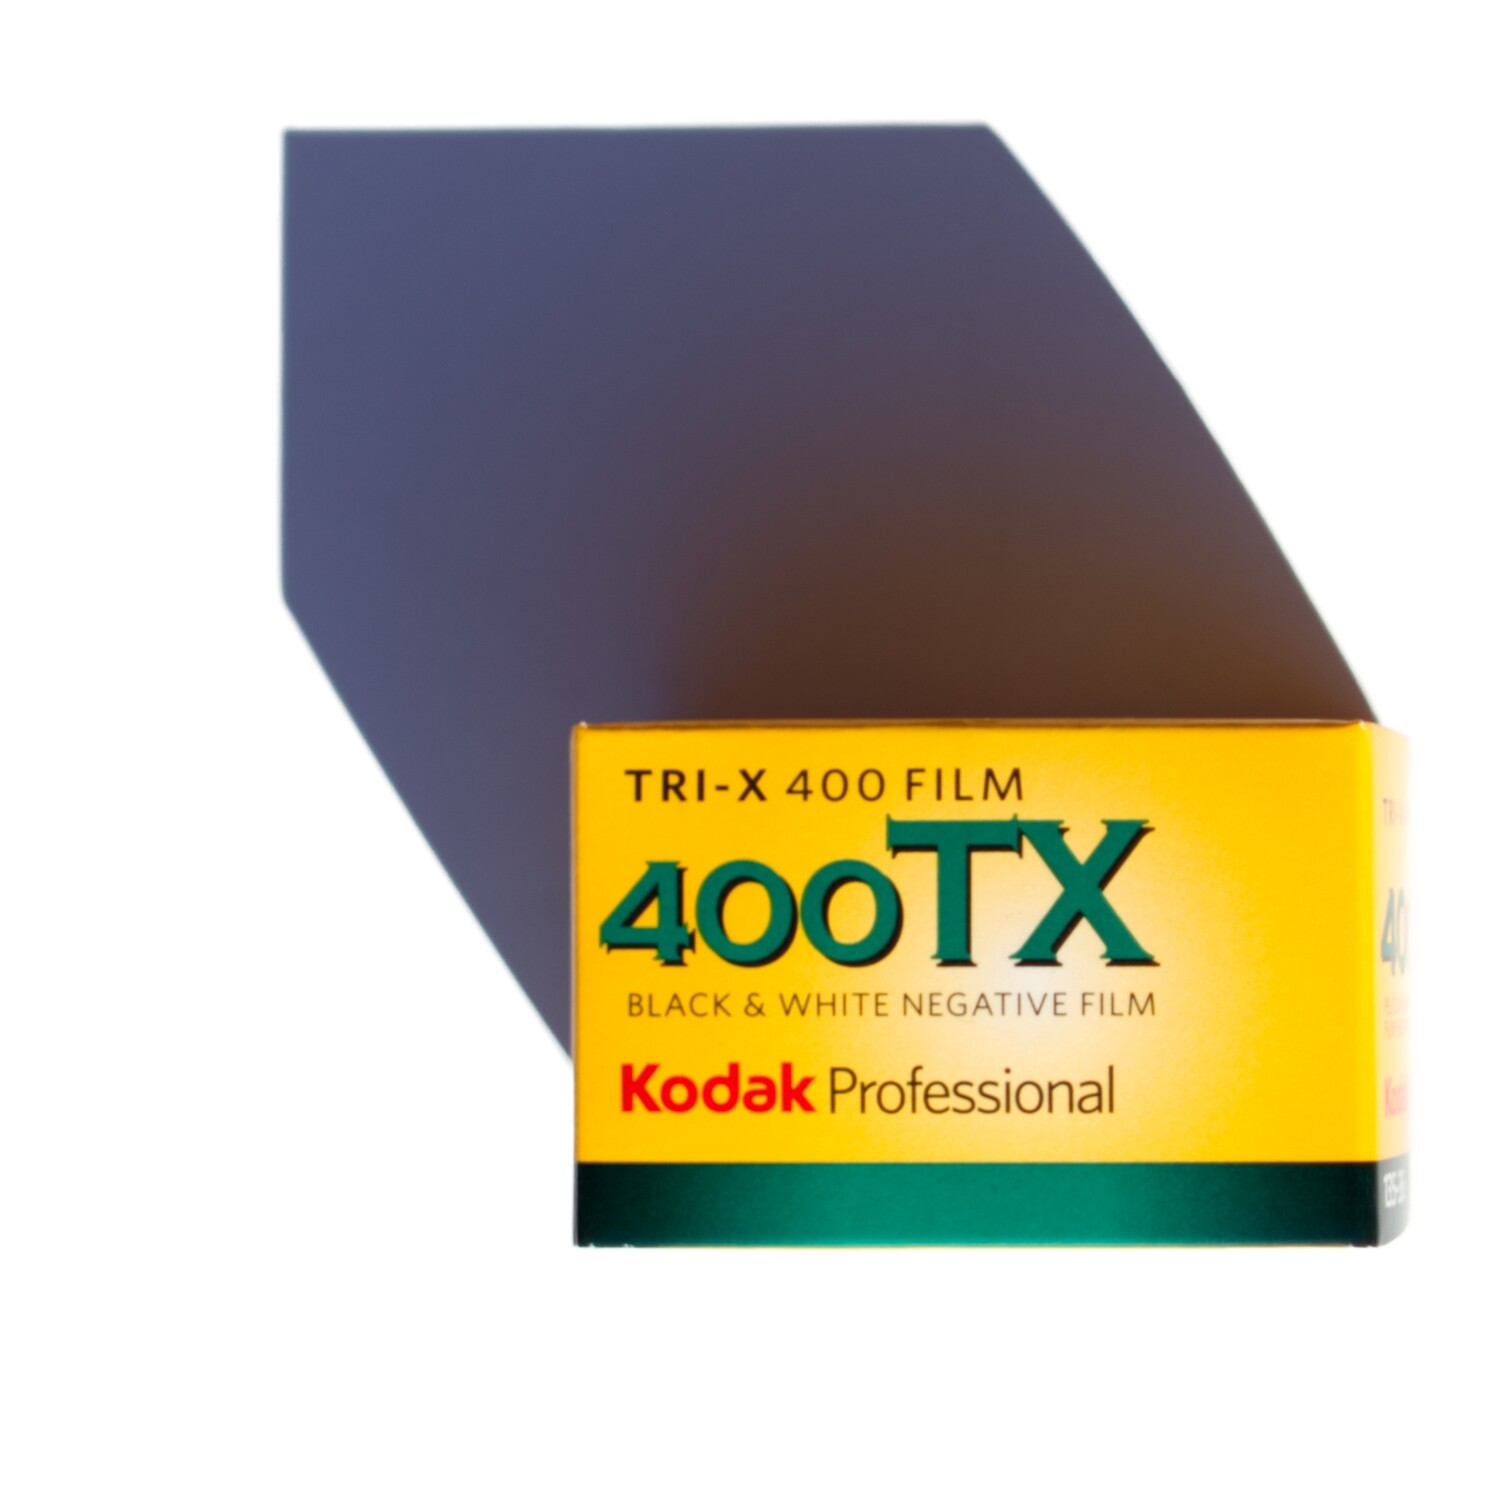 Kodak Professional Tri-X 400 35mm